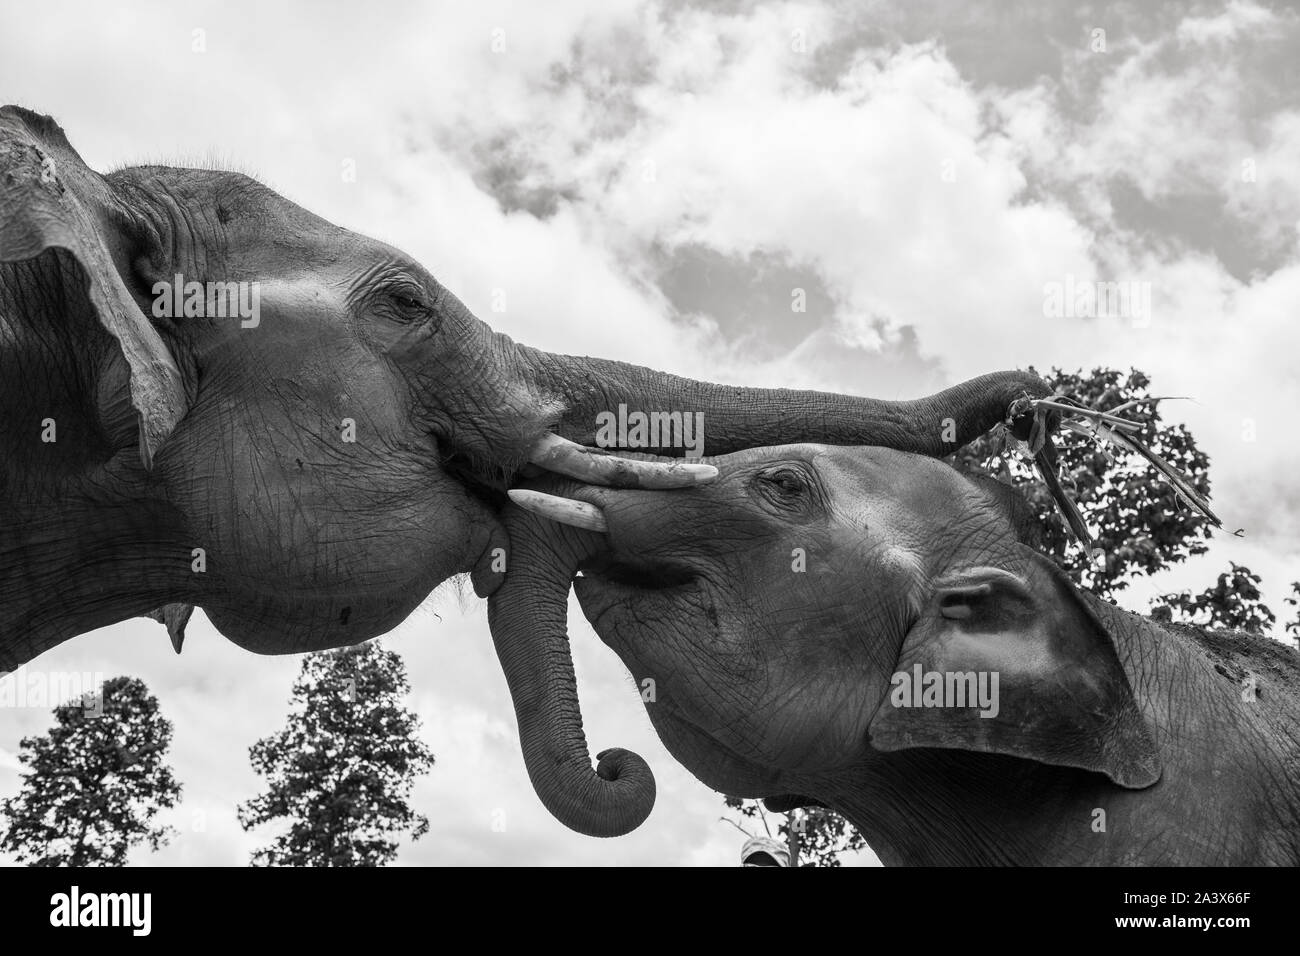 Elephants playing Stock Photo